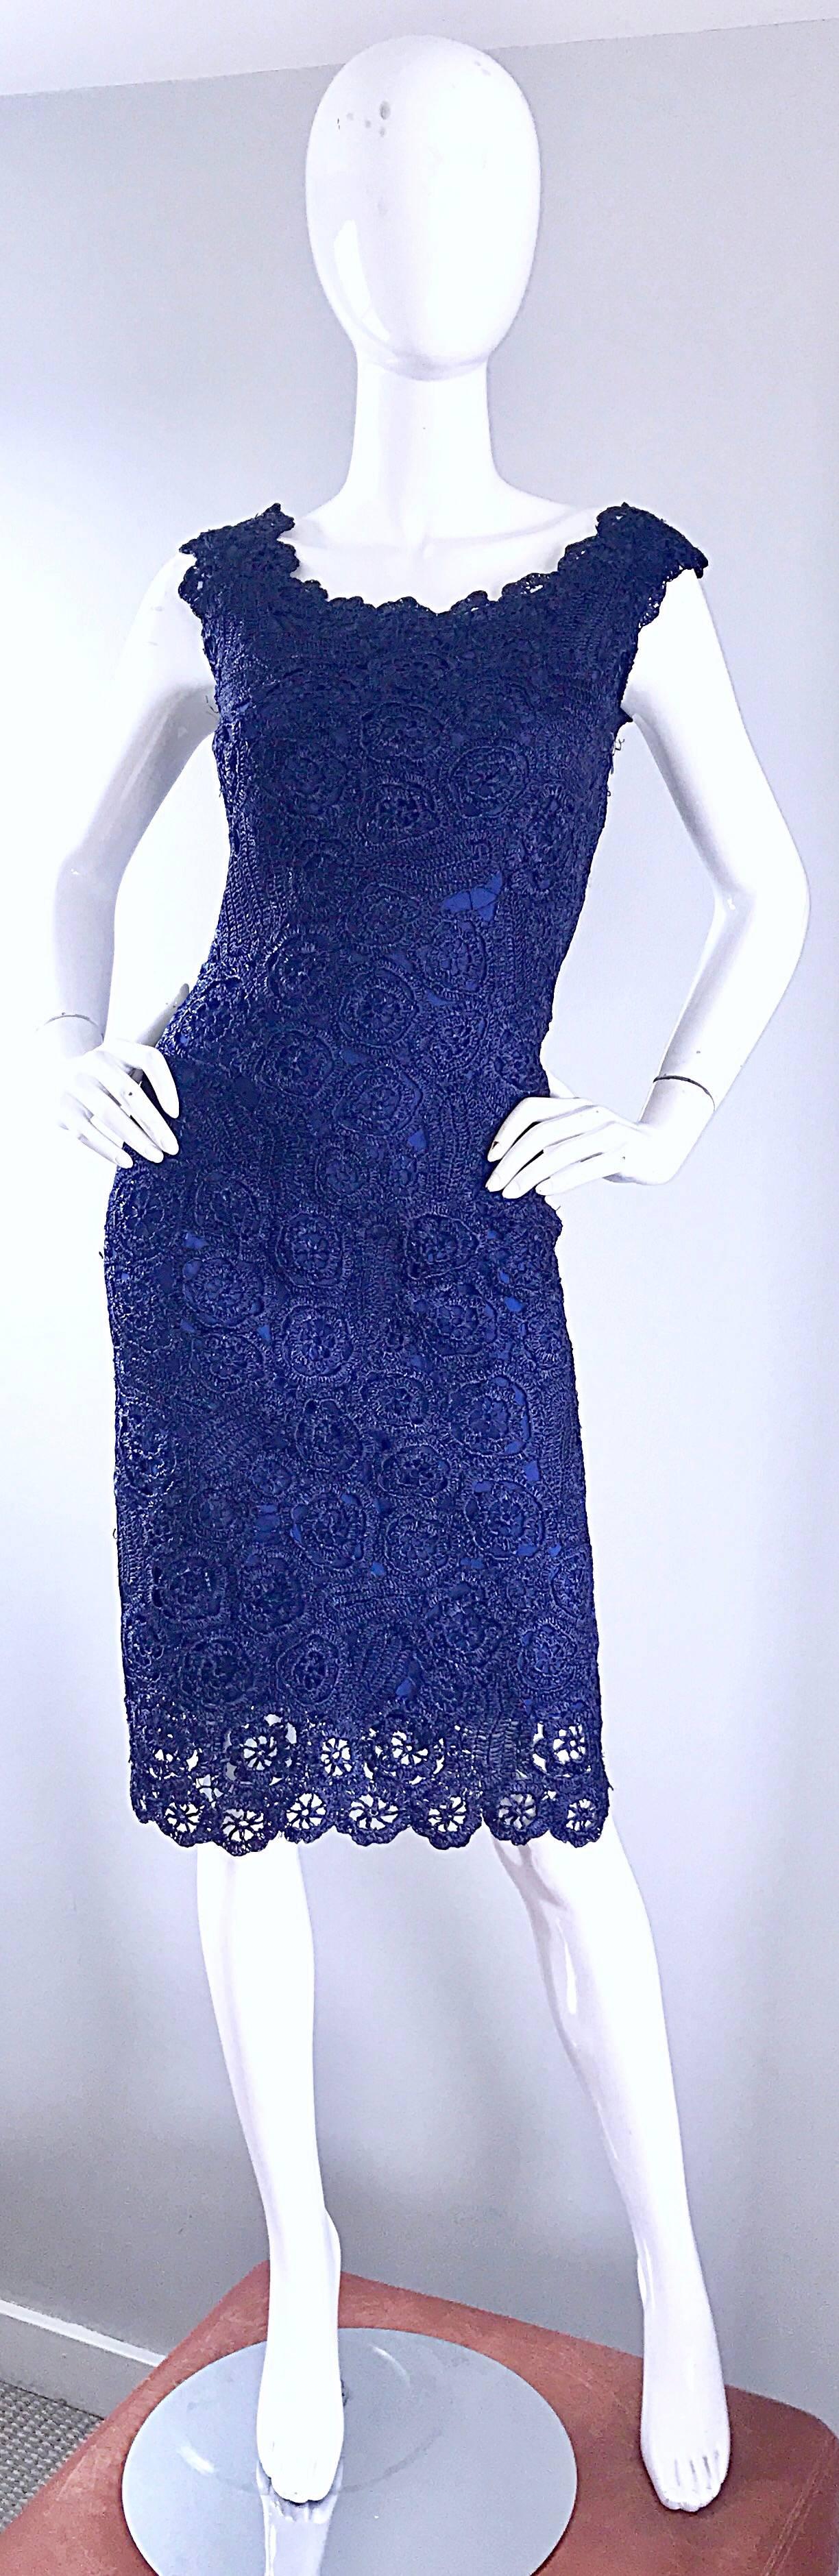 Umwerfendes marineblaues Raffia-Kleid von Demi Couture aus den 1950er Jahren! Leuchtend marineblauer Bast mit angesetztem Seidenfutter. Durchgehender Metallreißverschluss an der Seite mit Haken- und Ösenverschluss. Bombastische Passform mit